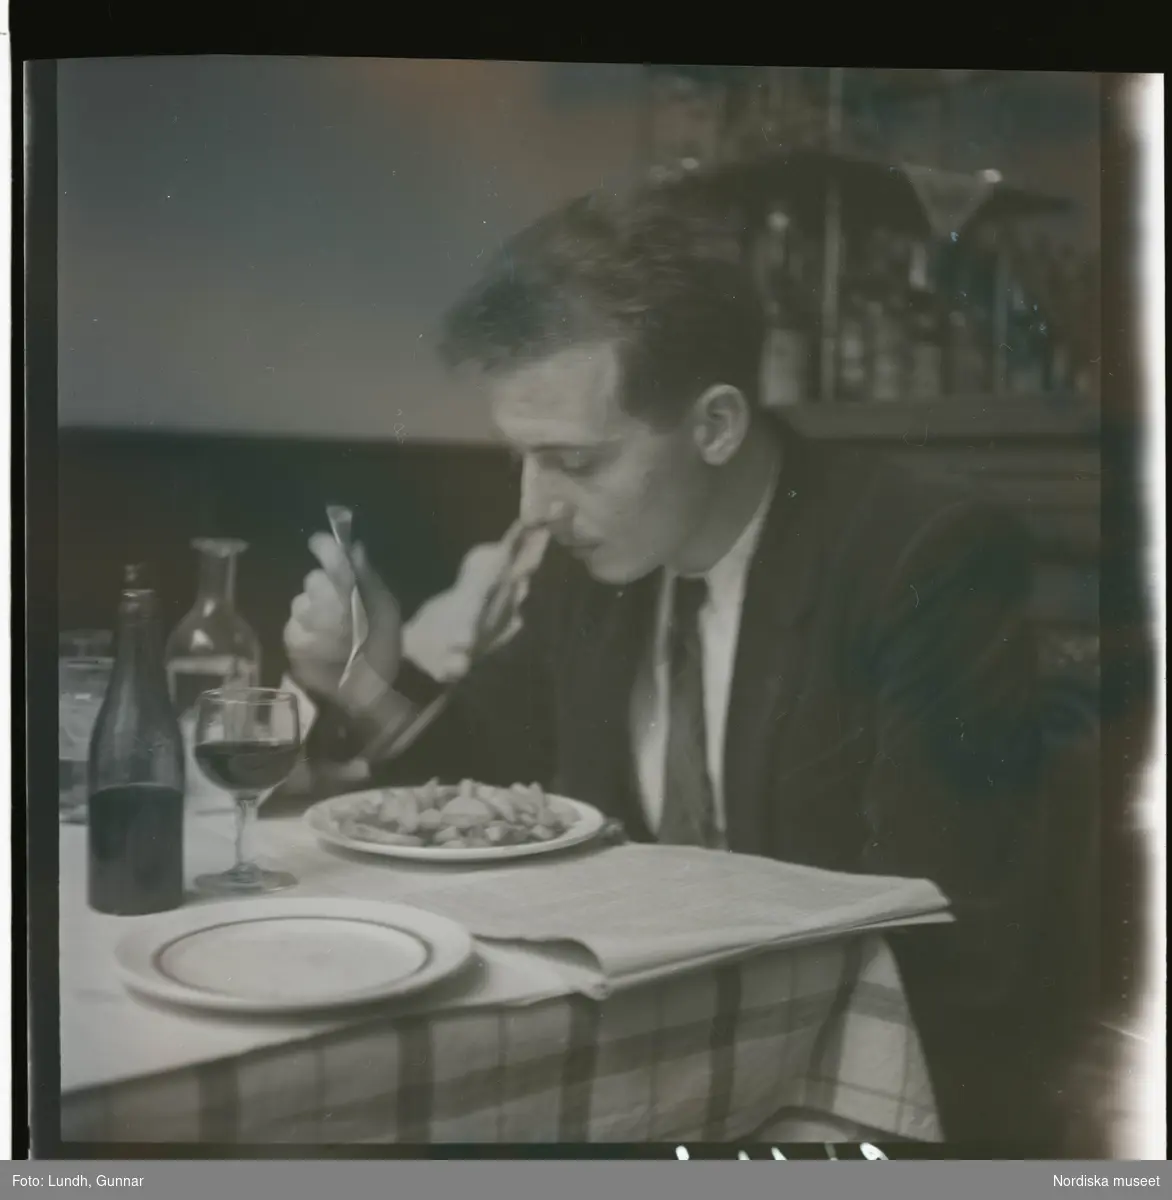 1950. Paris. en man sitter vid bord och äter